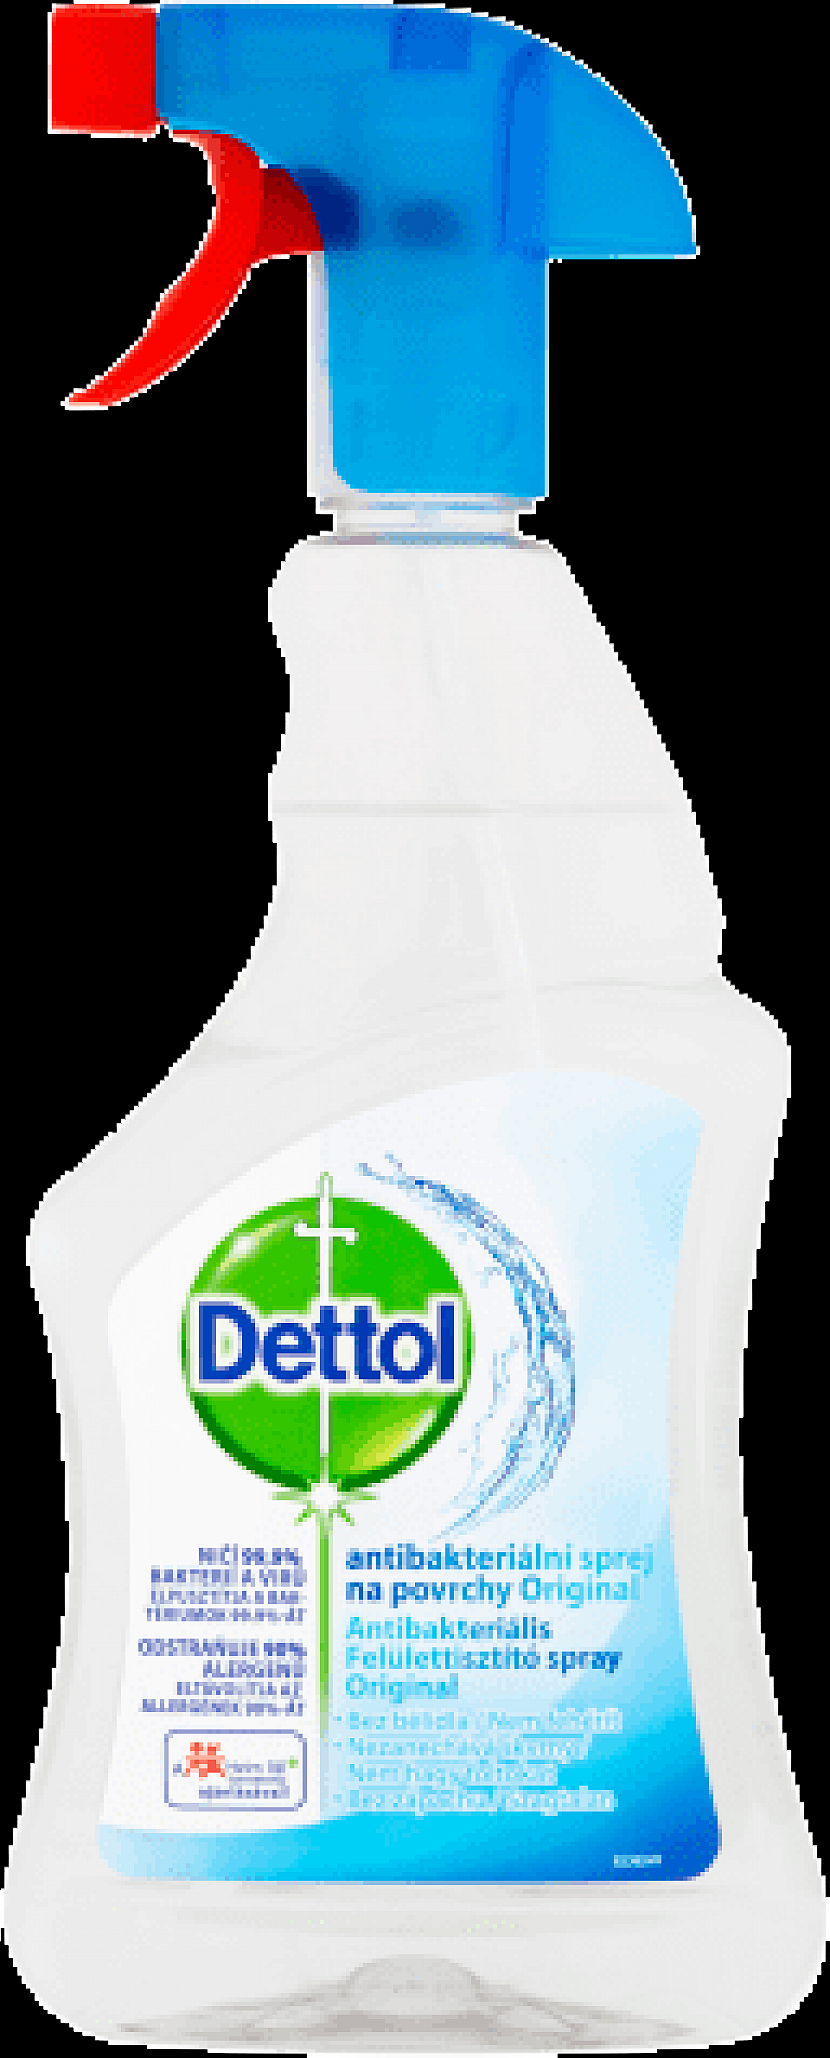 Zkrátit čas úklidu pomůže antibakteriální sprej Dettol, který ničí 99,9 % bakterií a virů a odstraňuje 90 % alergenů